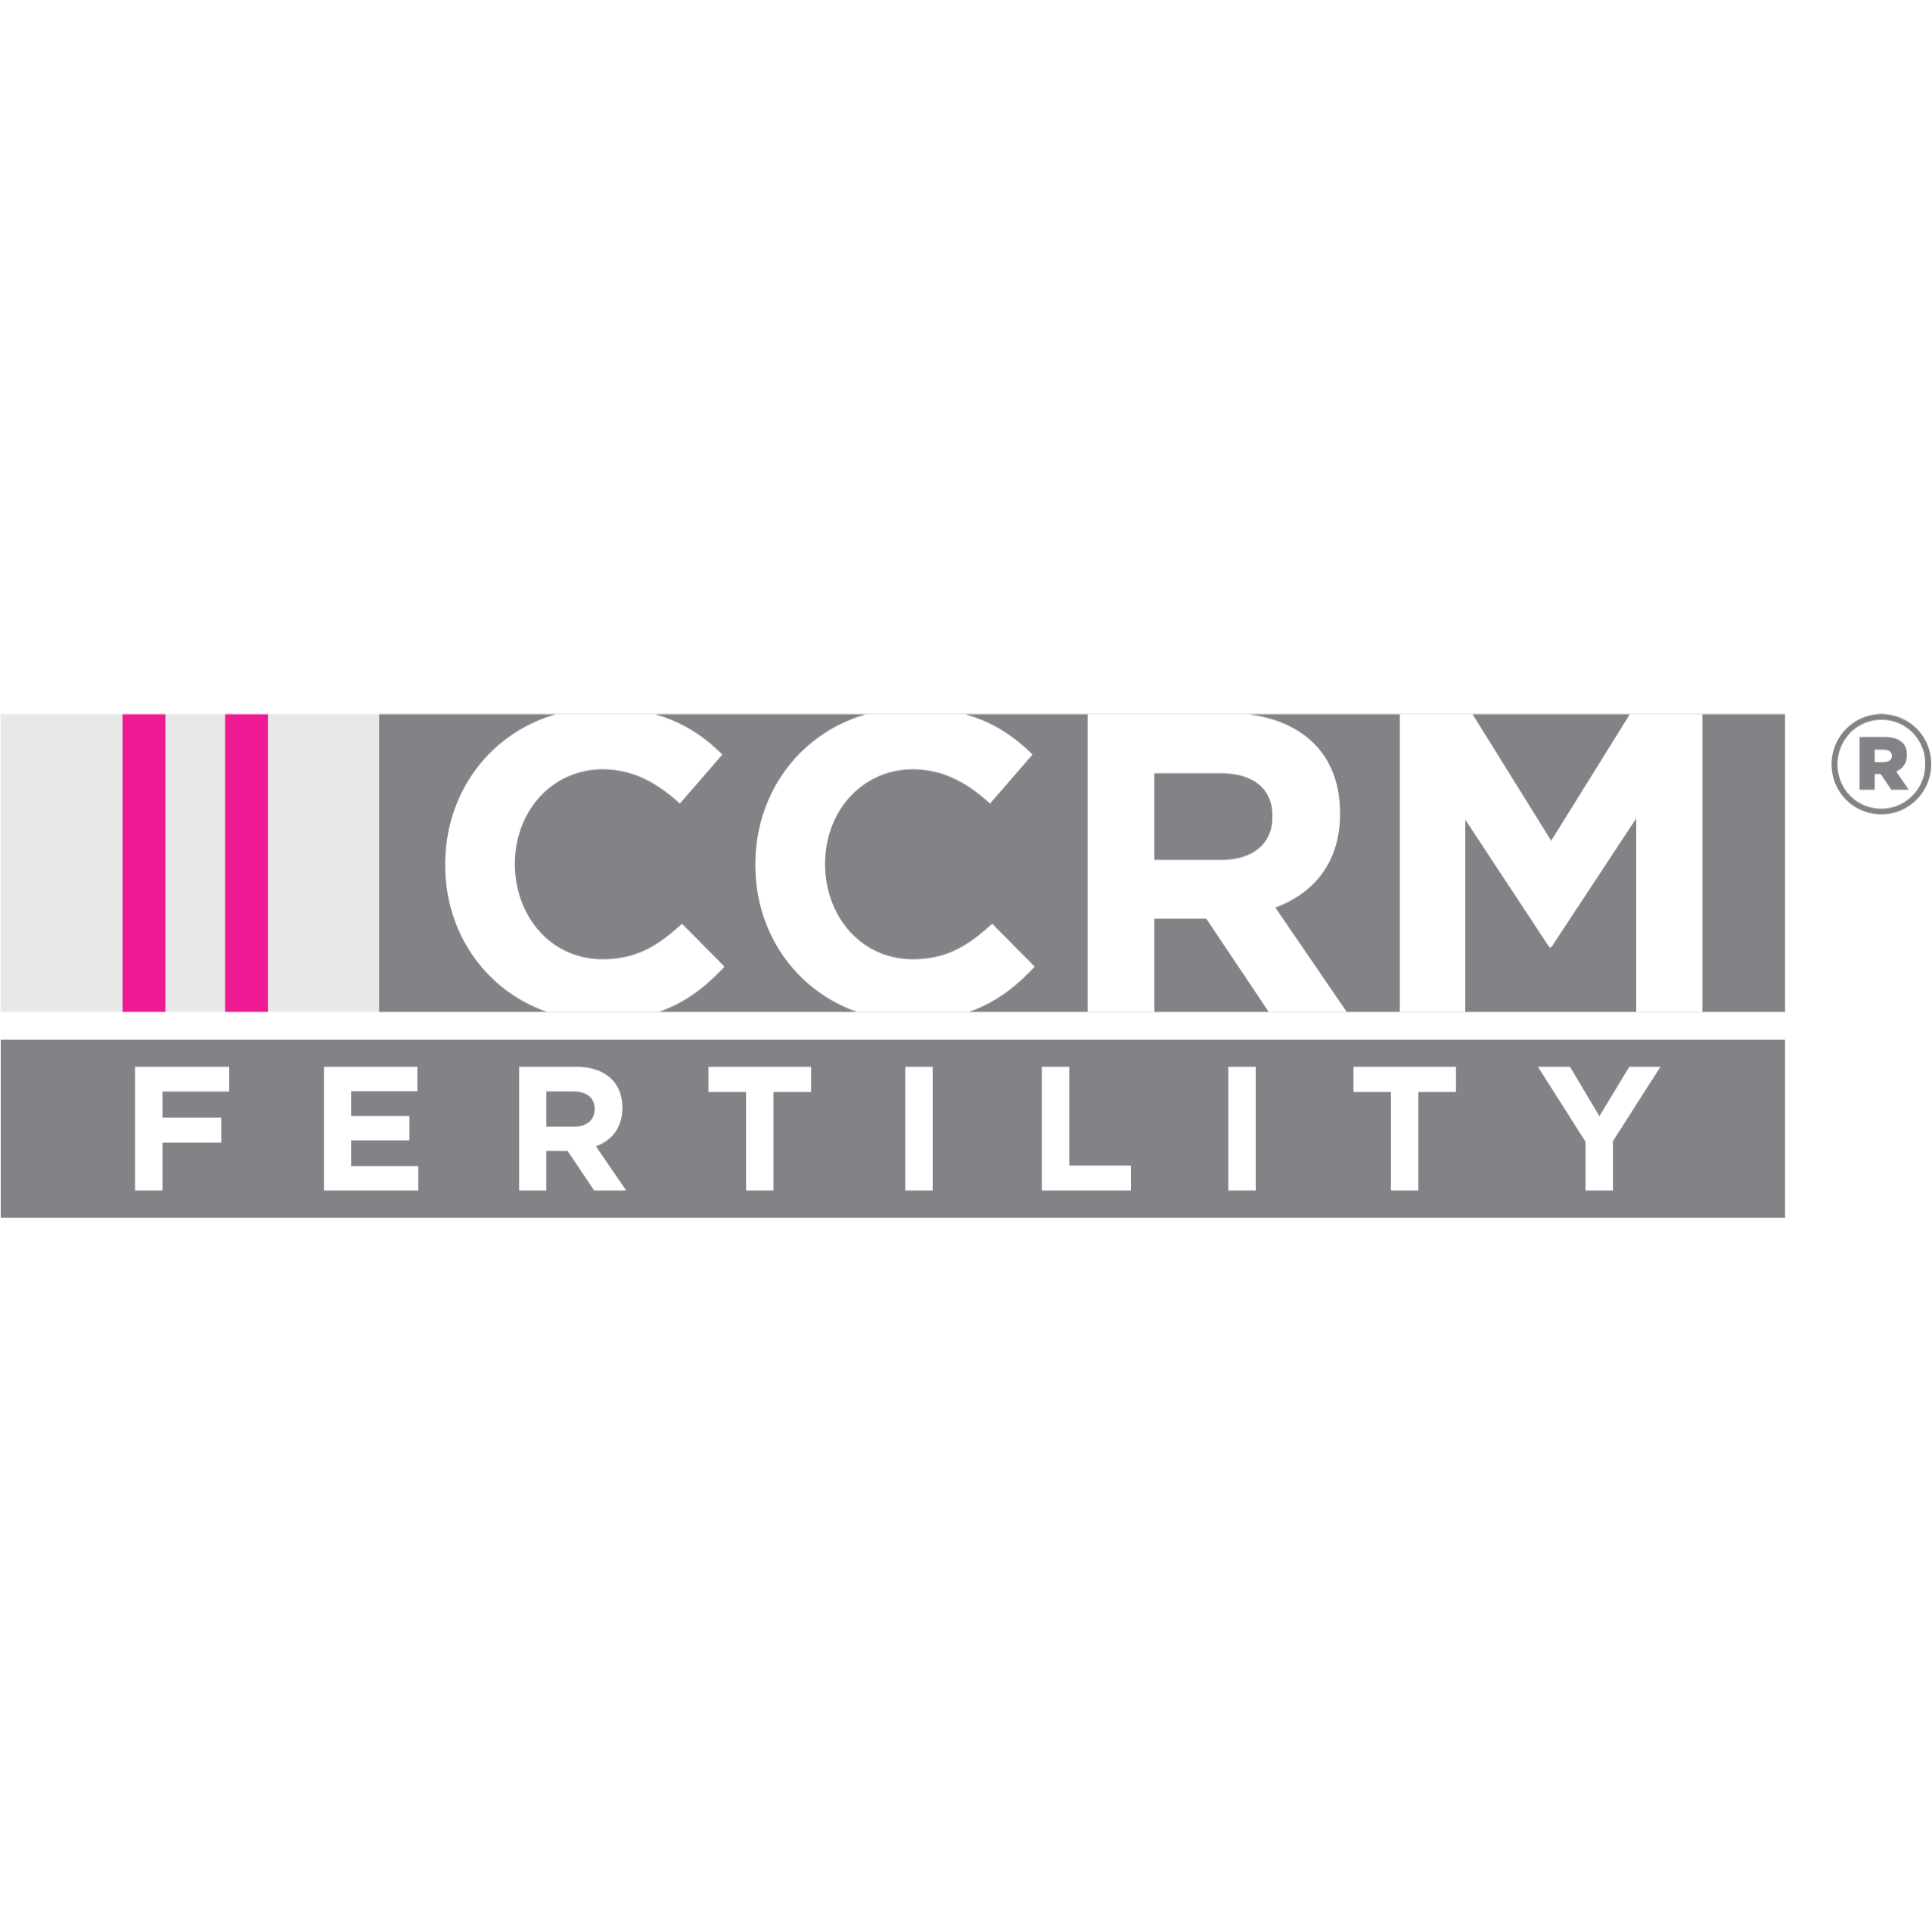 CCRM Fertility of Virginia Beach